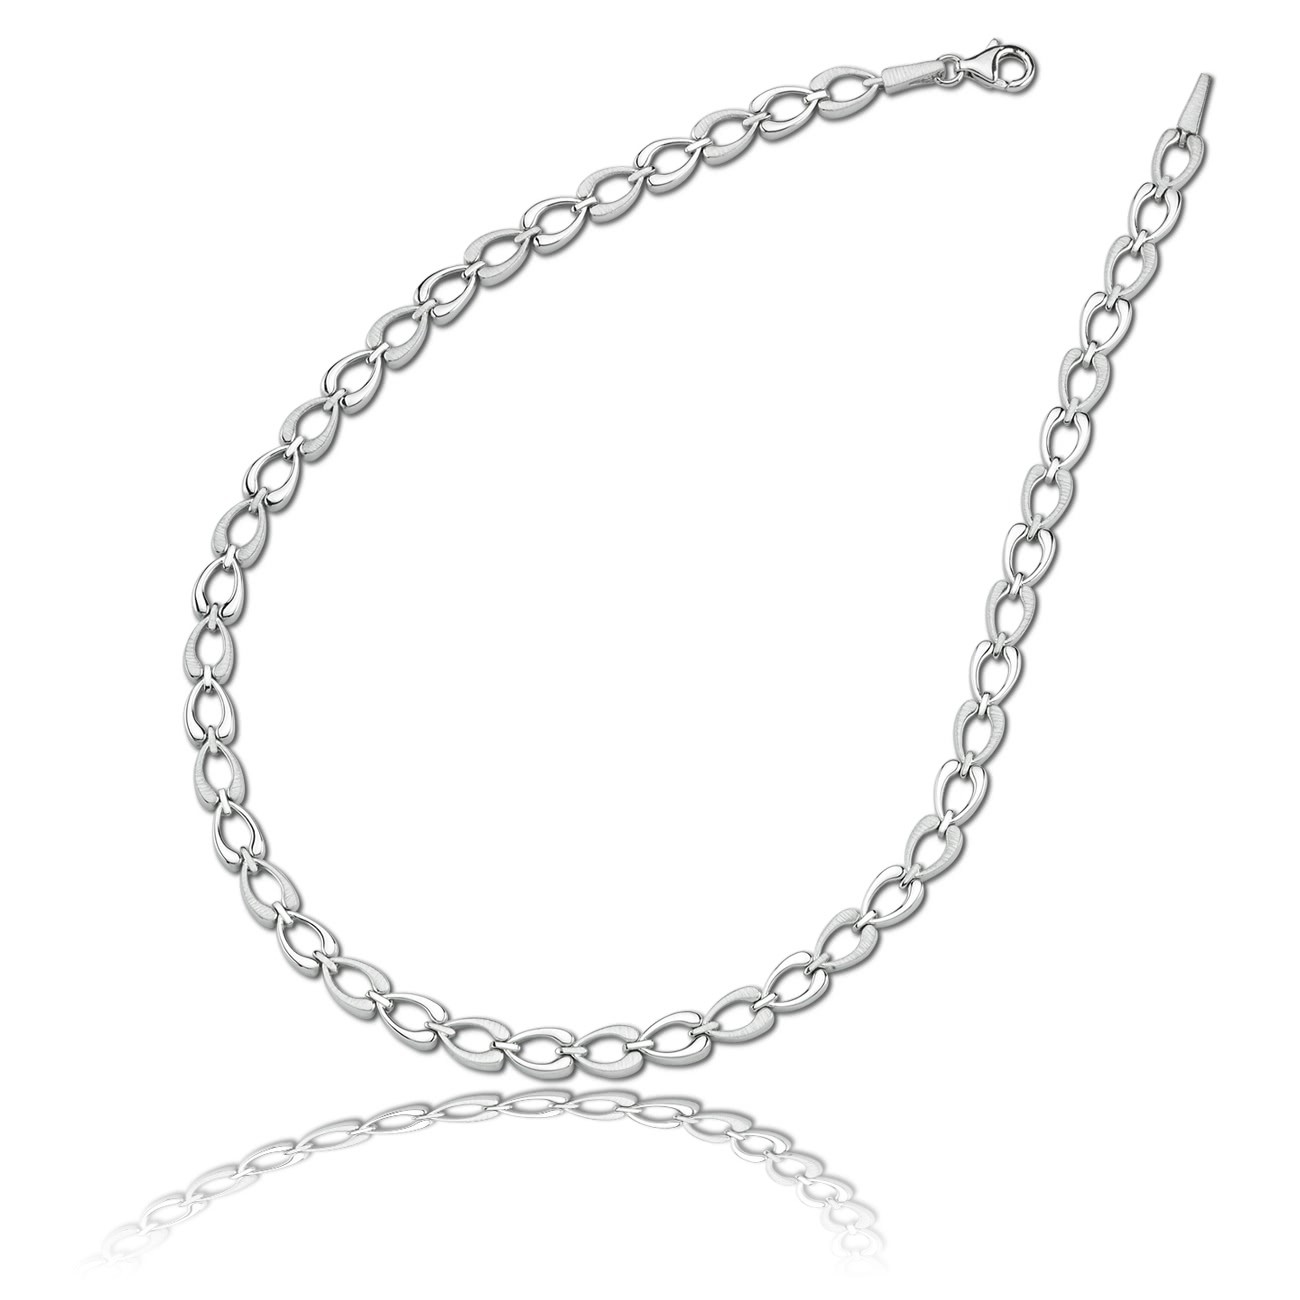 Balia Halskette für Damen matt-glanz aus 925 Silber 45cm BAK006S45